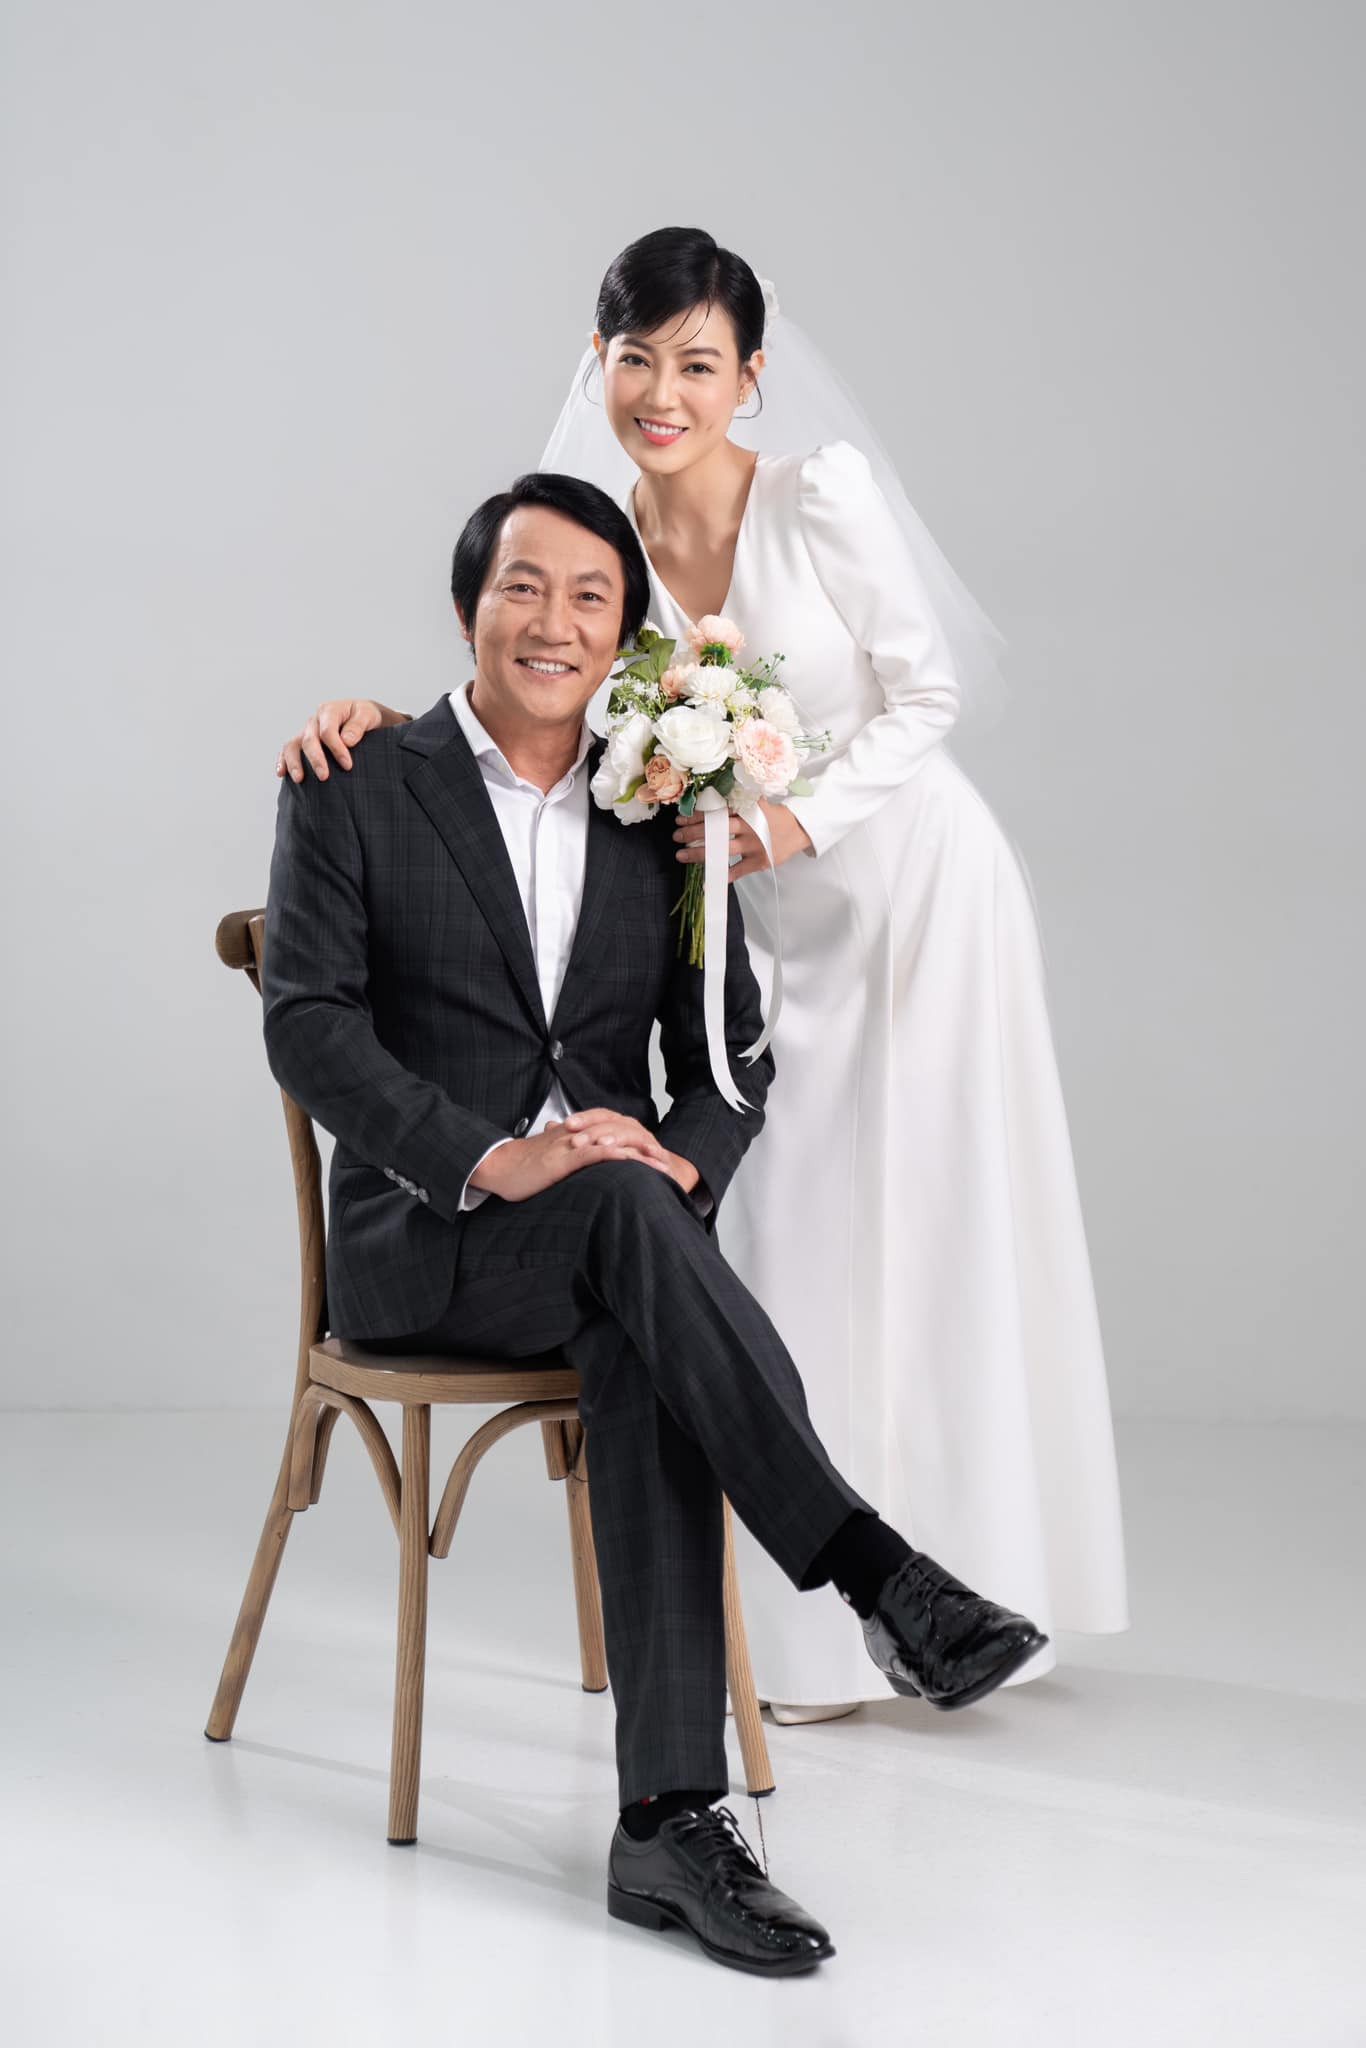 Hoàng Hải, Thanh Hương chụp ảnh cưới, gây bất ngờ ở 'Cuộc đời vẫn đẹp sao' - Ảnh 4.